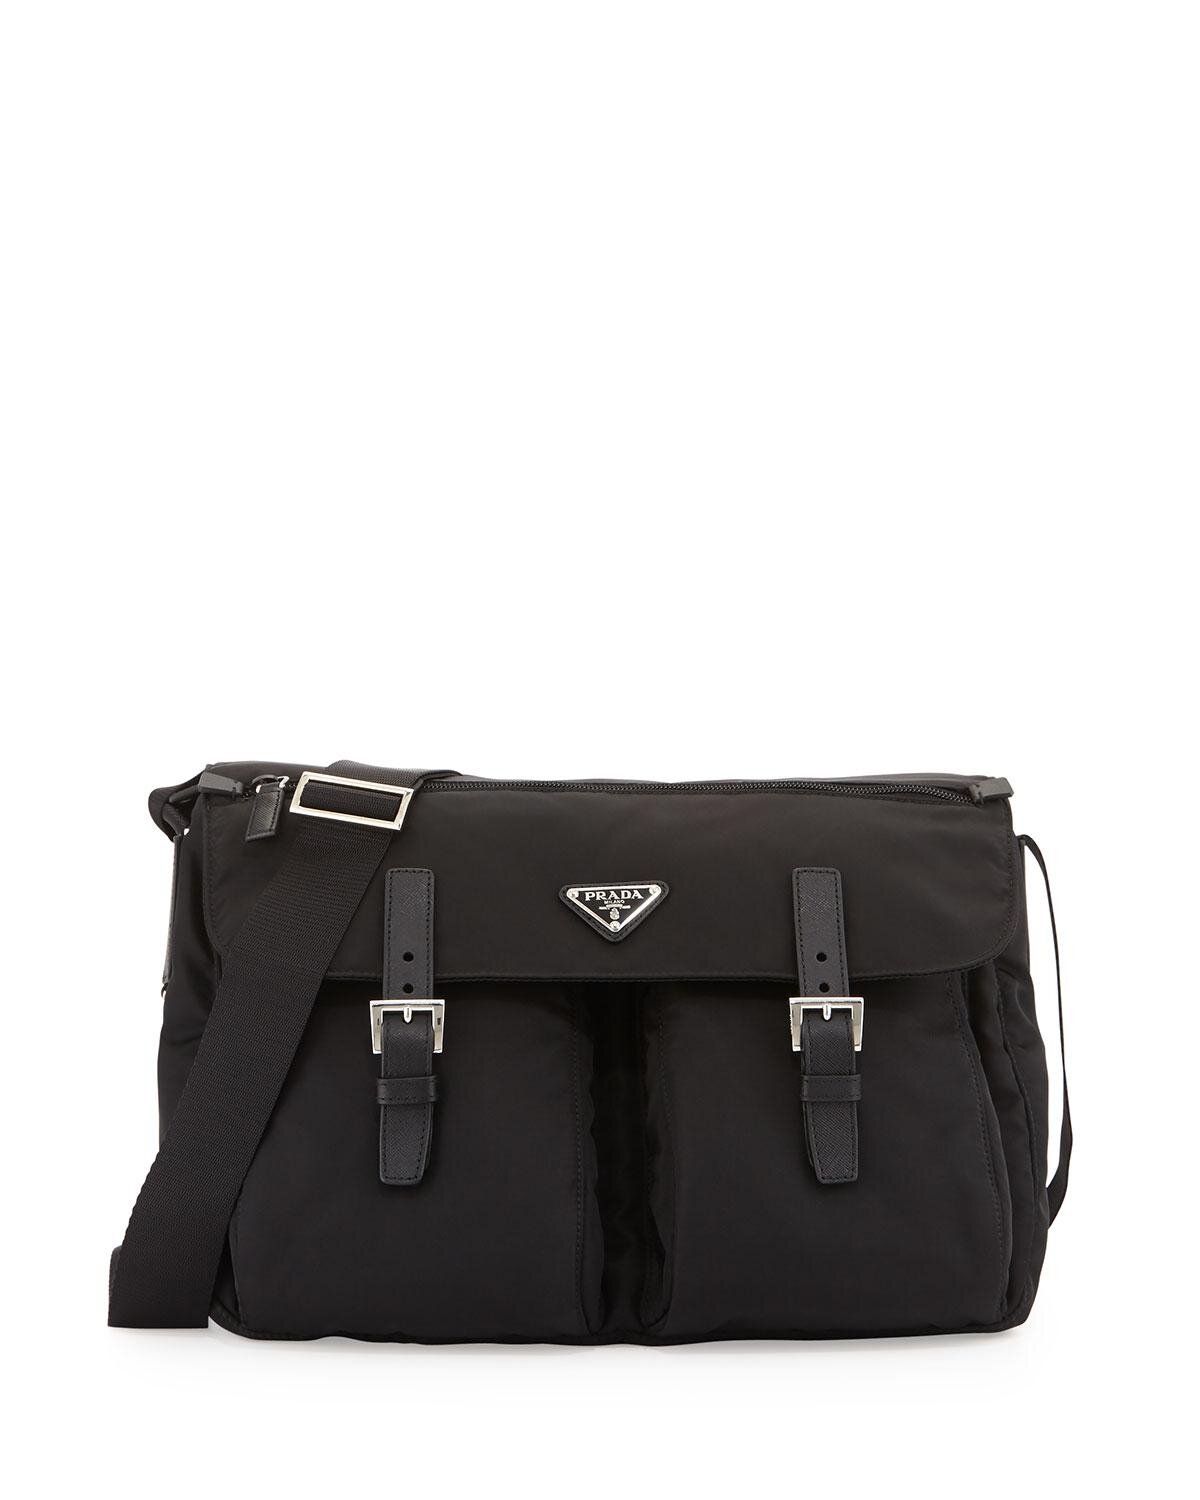 Prada Vela Buckled Messenger Bag in Black.jpg